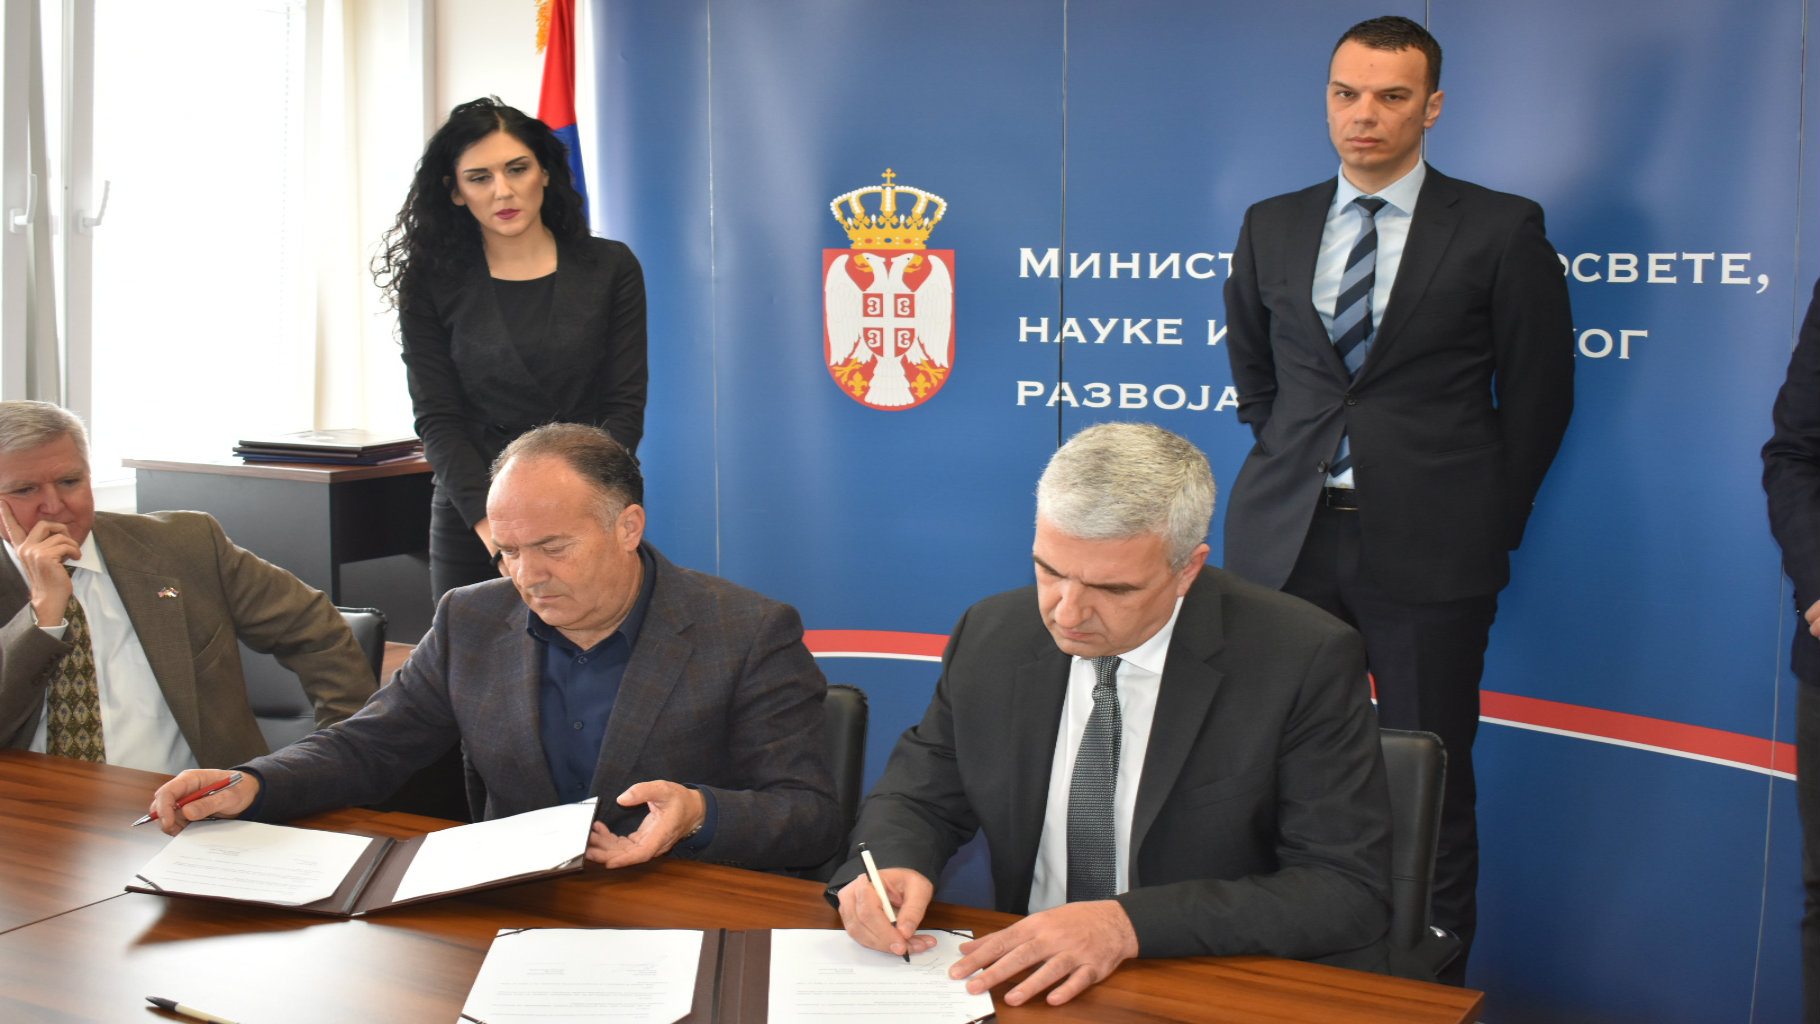 Kompanije donirale 75 laptopova za PISA testiranja u Srbiji 1